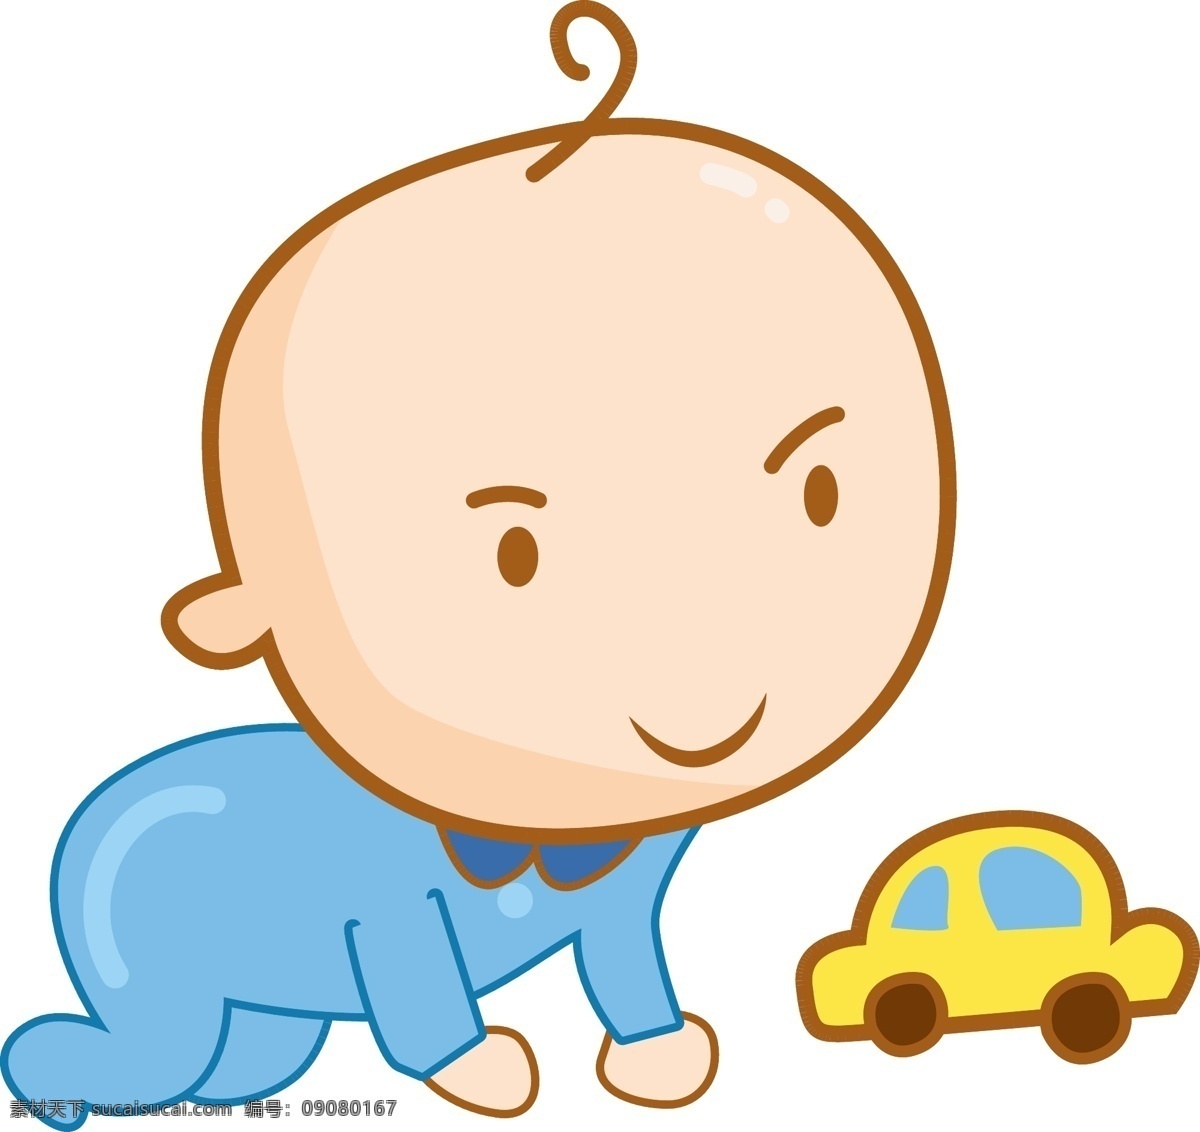 婴儿 小汽车 人物 插画 婴儿人物插画 黄色的小汽车 卡通人物 玩耍的婴儿 婴儿装饰 婴儿插画 卡通婴儿